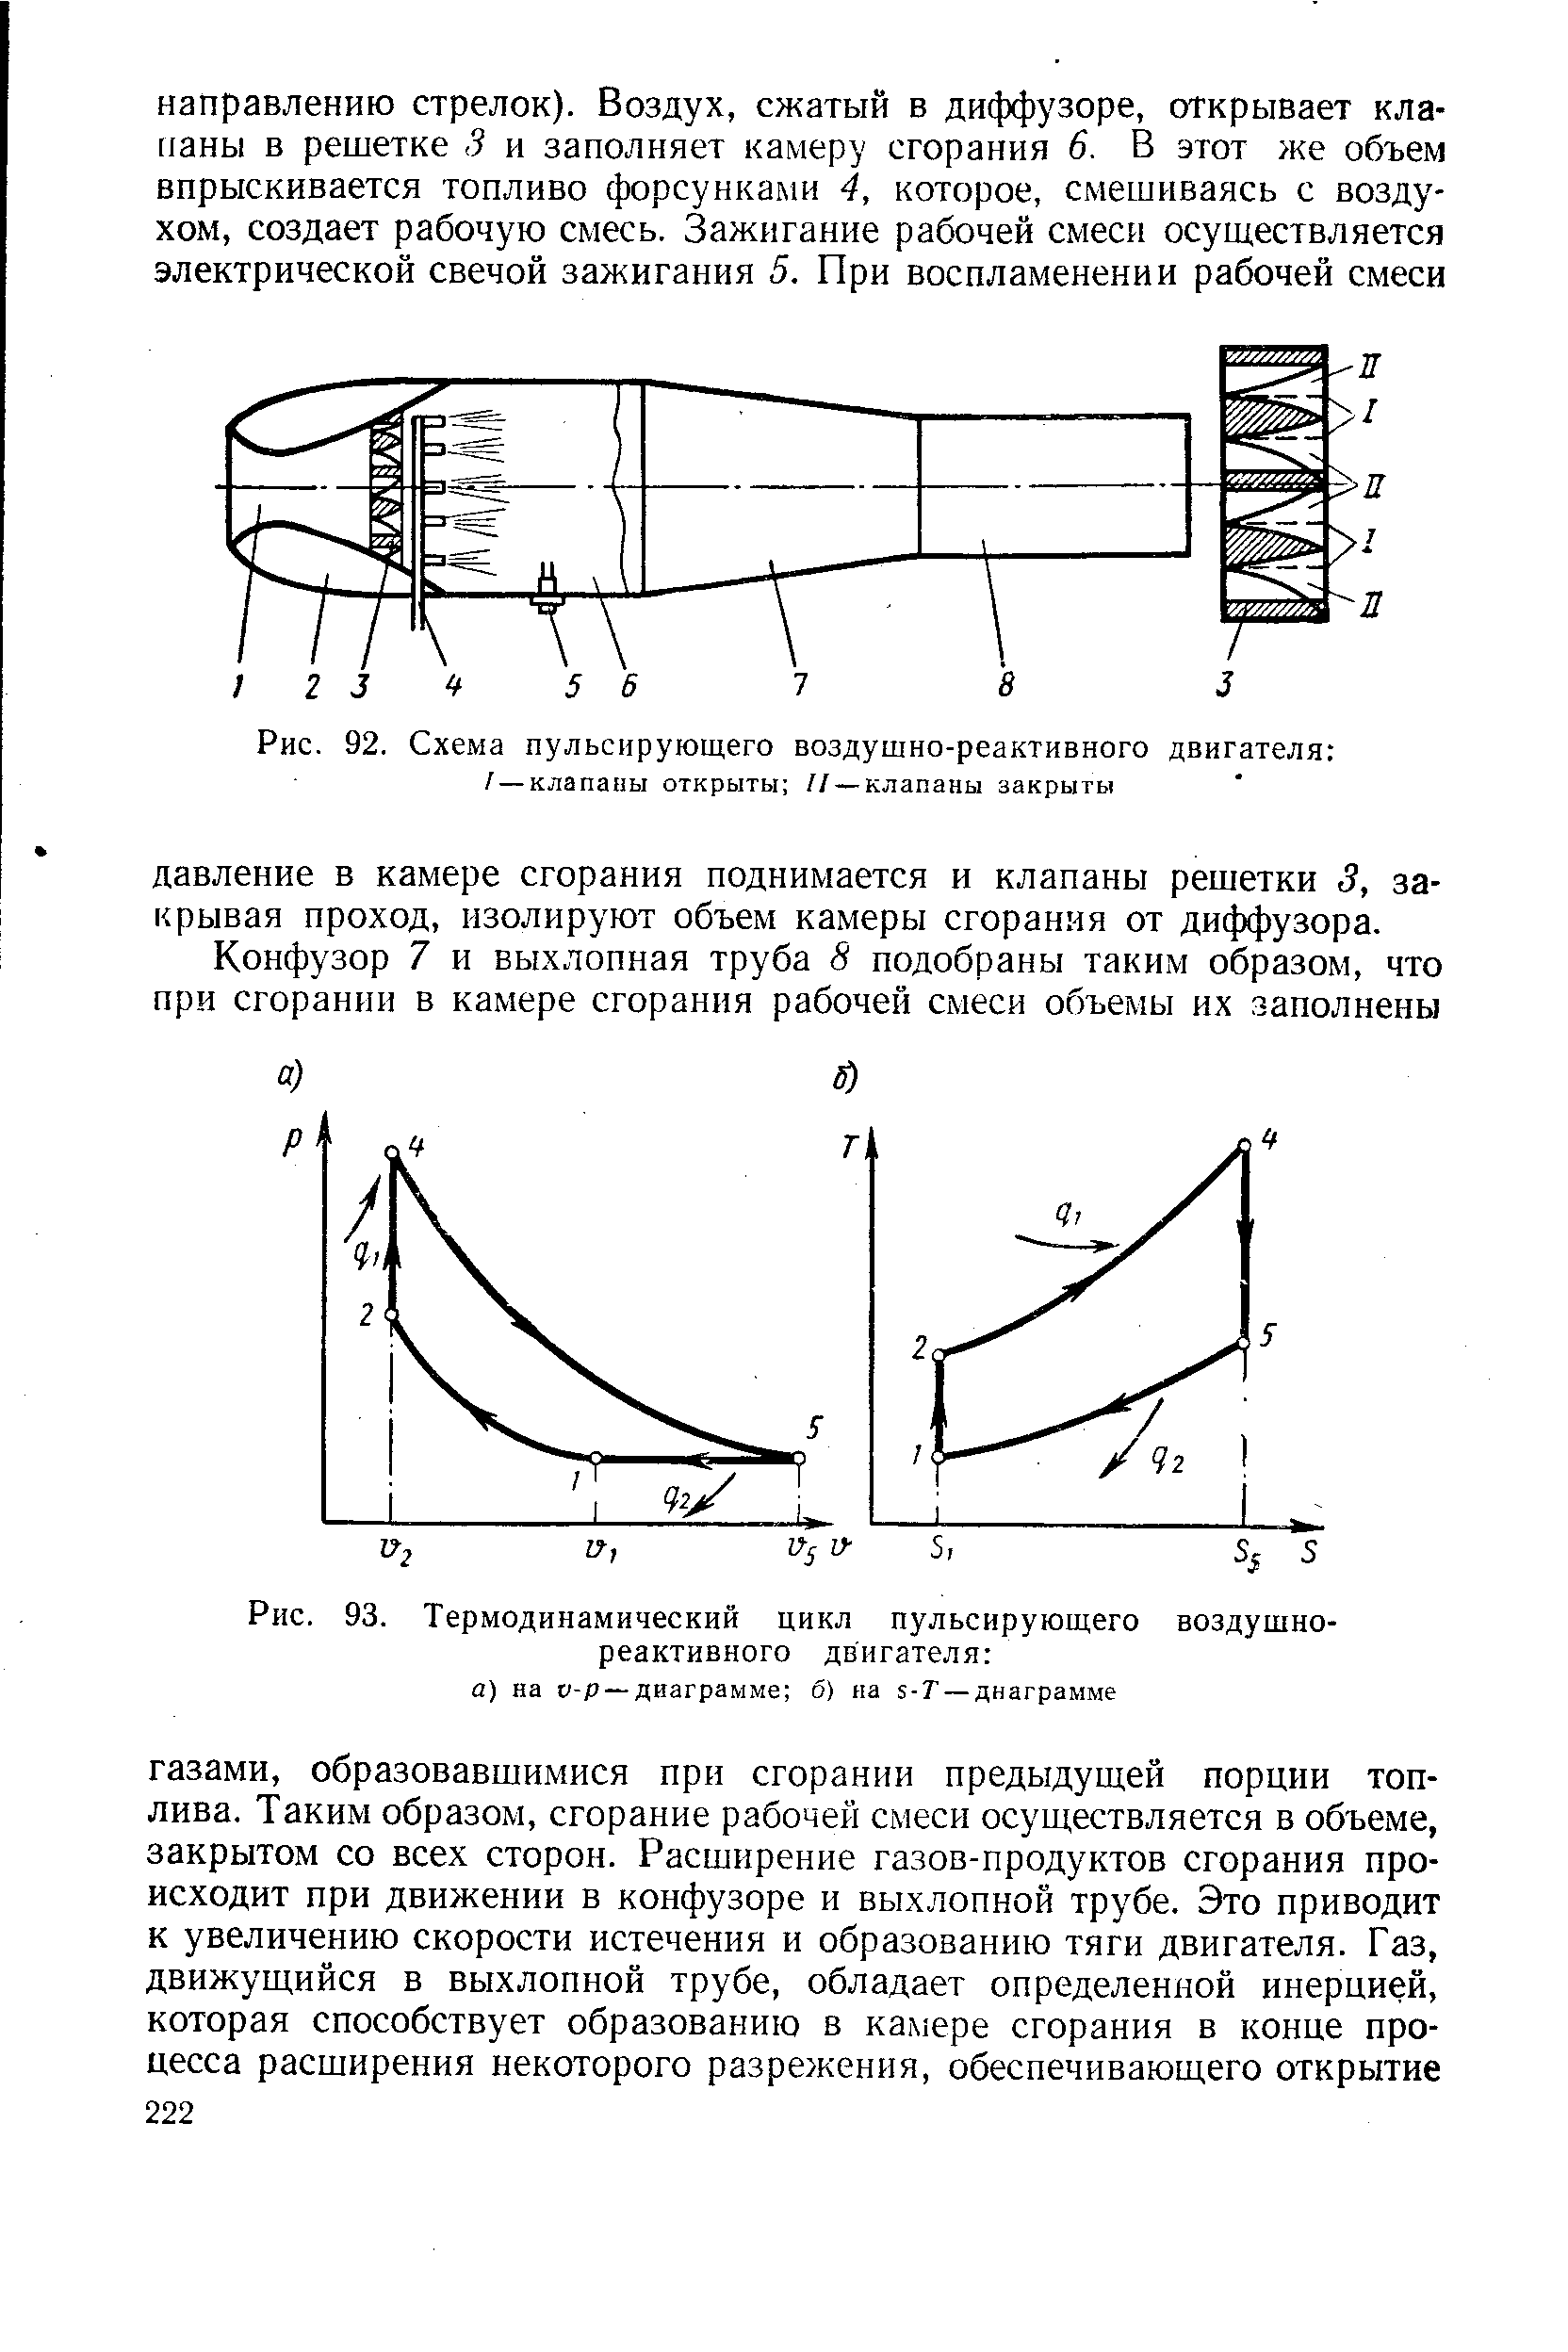 Рис. 93. <a href="/info/19066">Термодинамический цикл</a> <a href="/info/202137">пульсирующего воздушно-реактивного двигателя</a> а) на v-p — диаграмме б) на s-T — диаграмме
